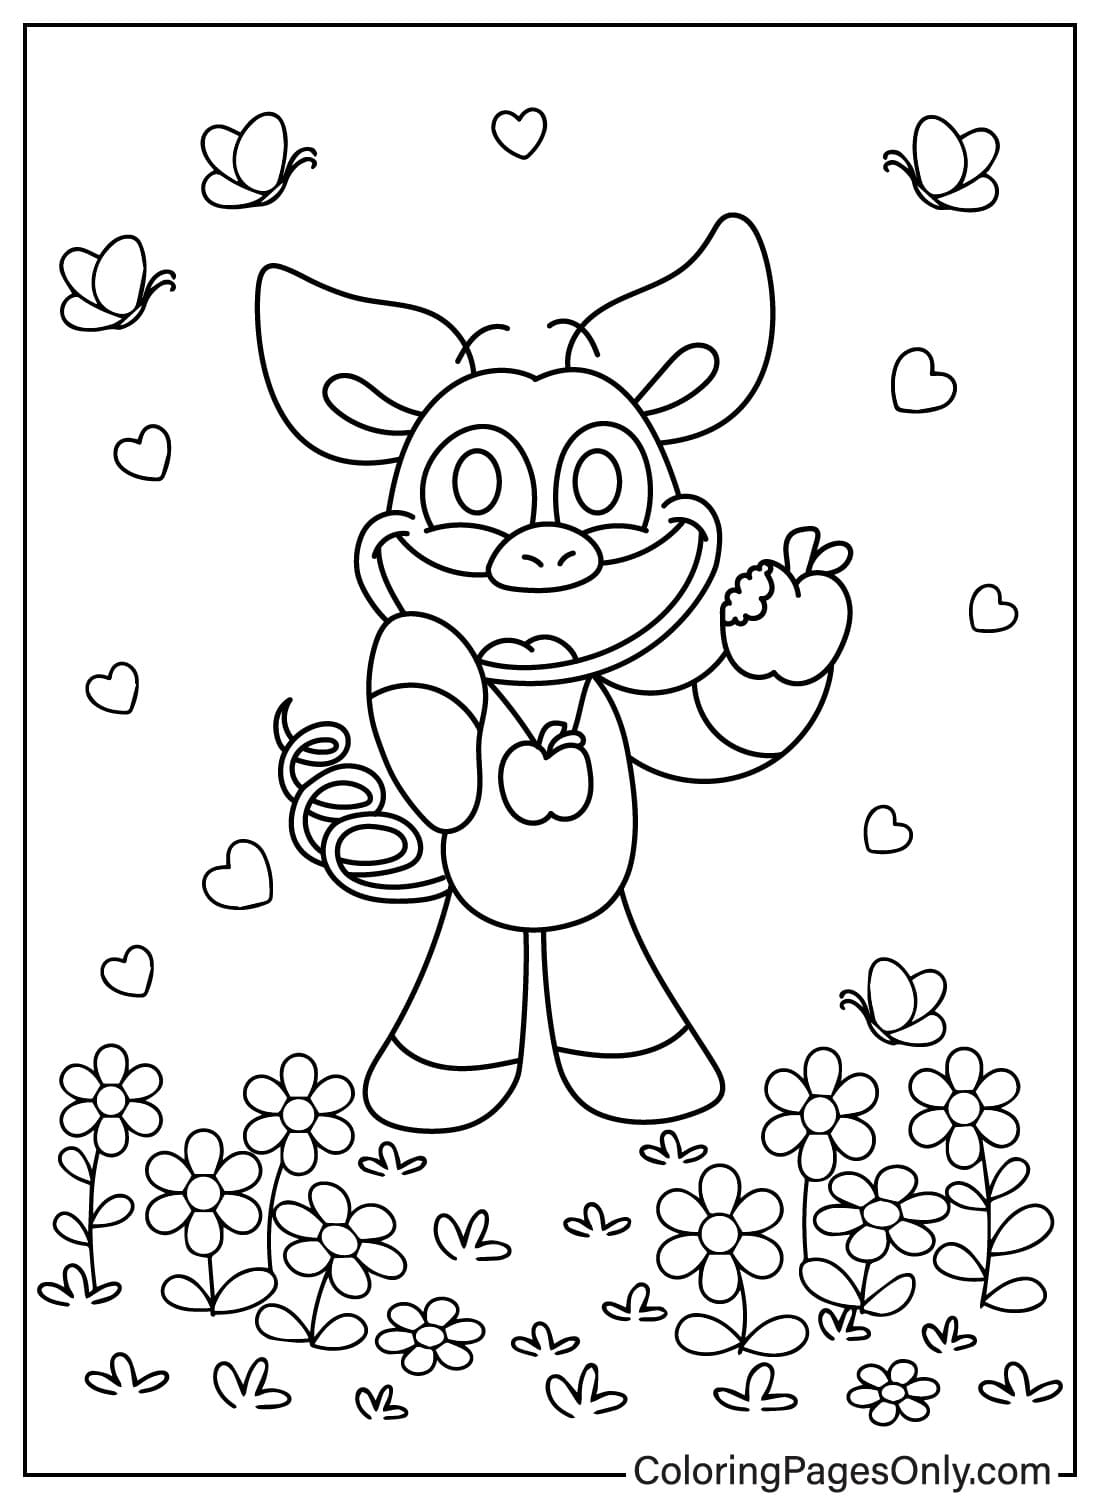 Página para colorir de PickyPiggy Comendo maçãs no jardim de flores de PickyPiggy